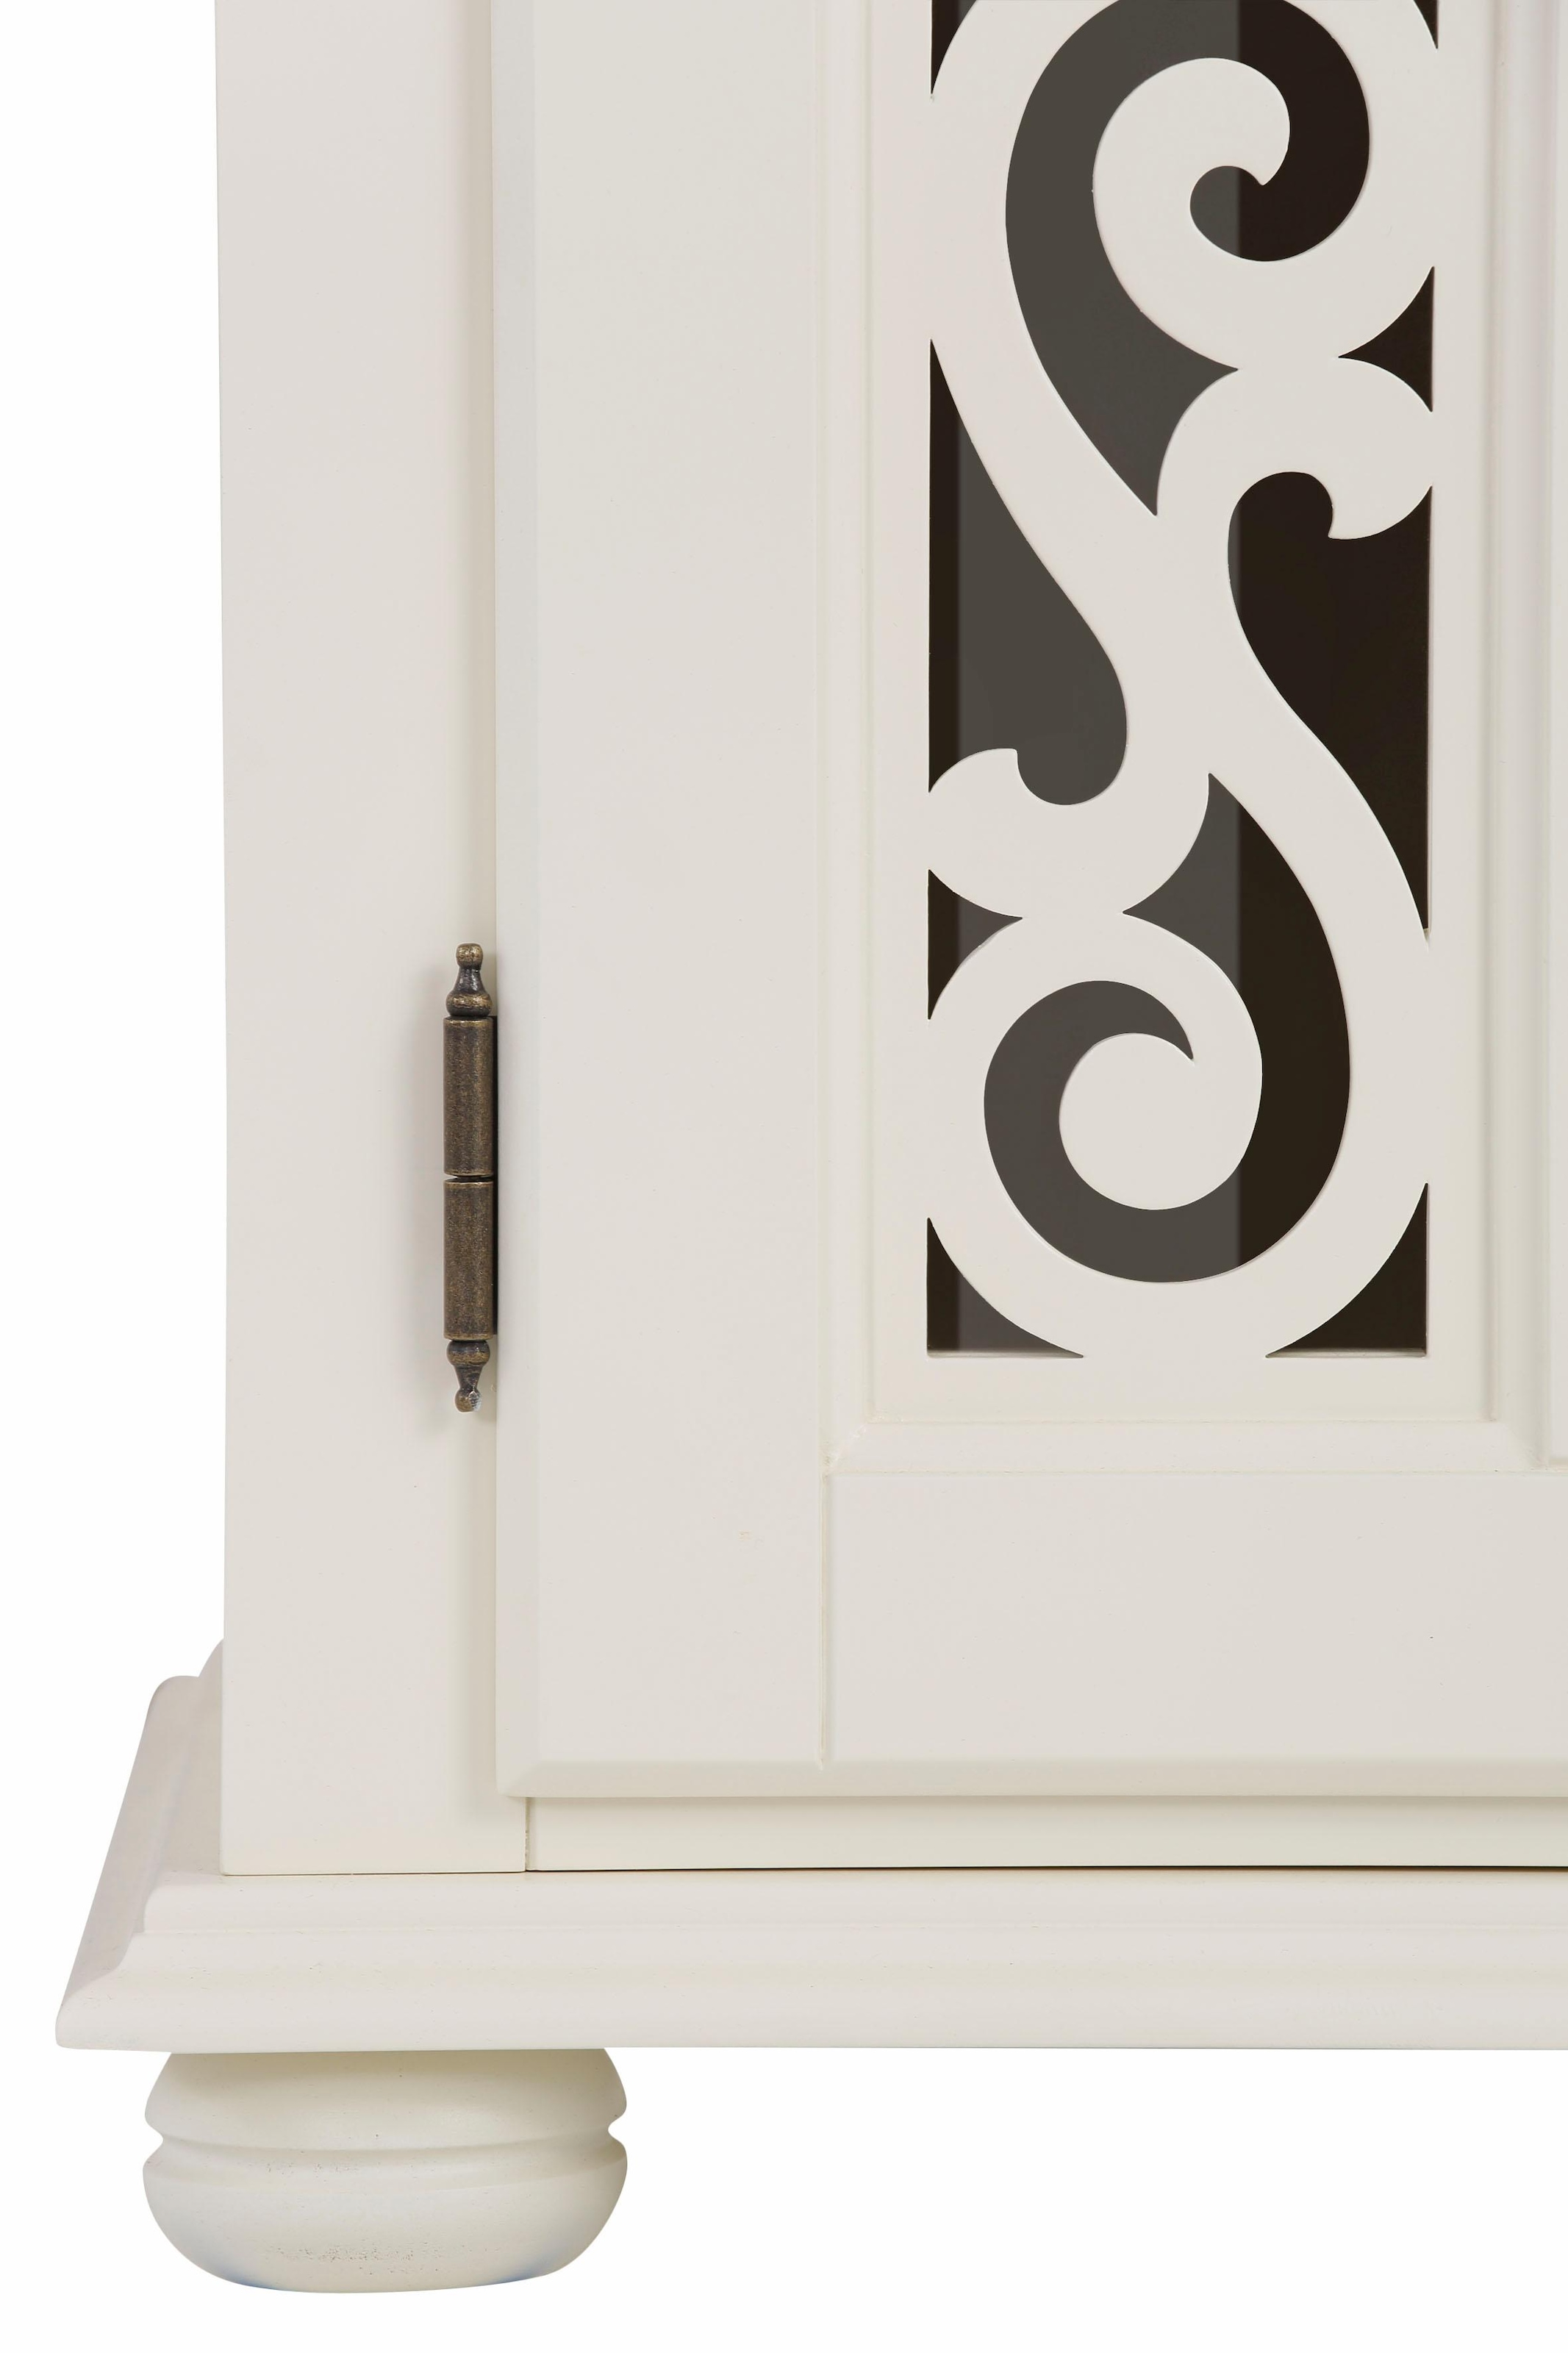 Home affaire Kommode »Arabeske«, mit schönen dekorativen Fräsungen auf den Türfronten, Breite 90 cm